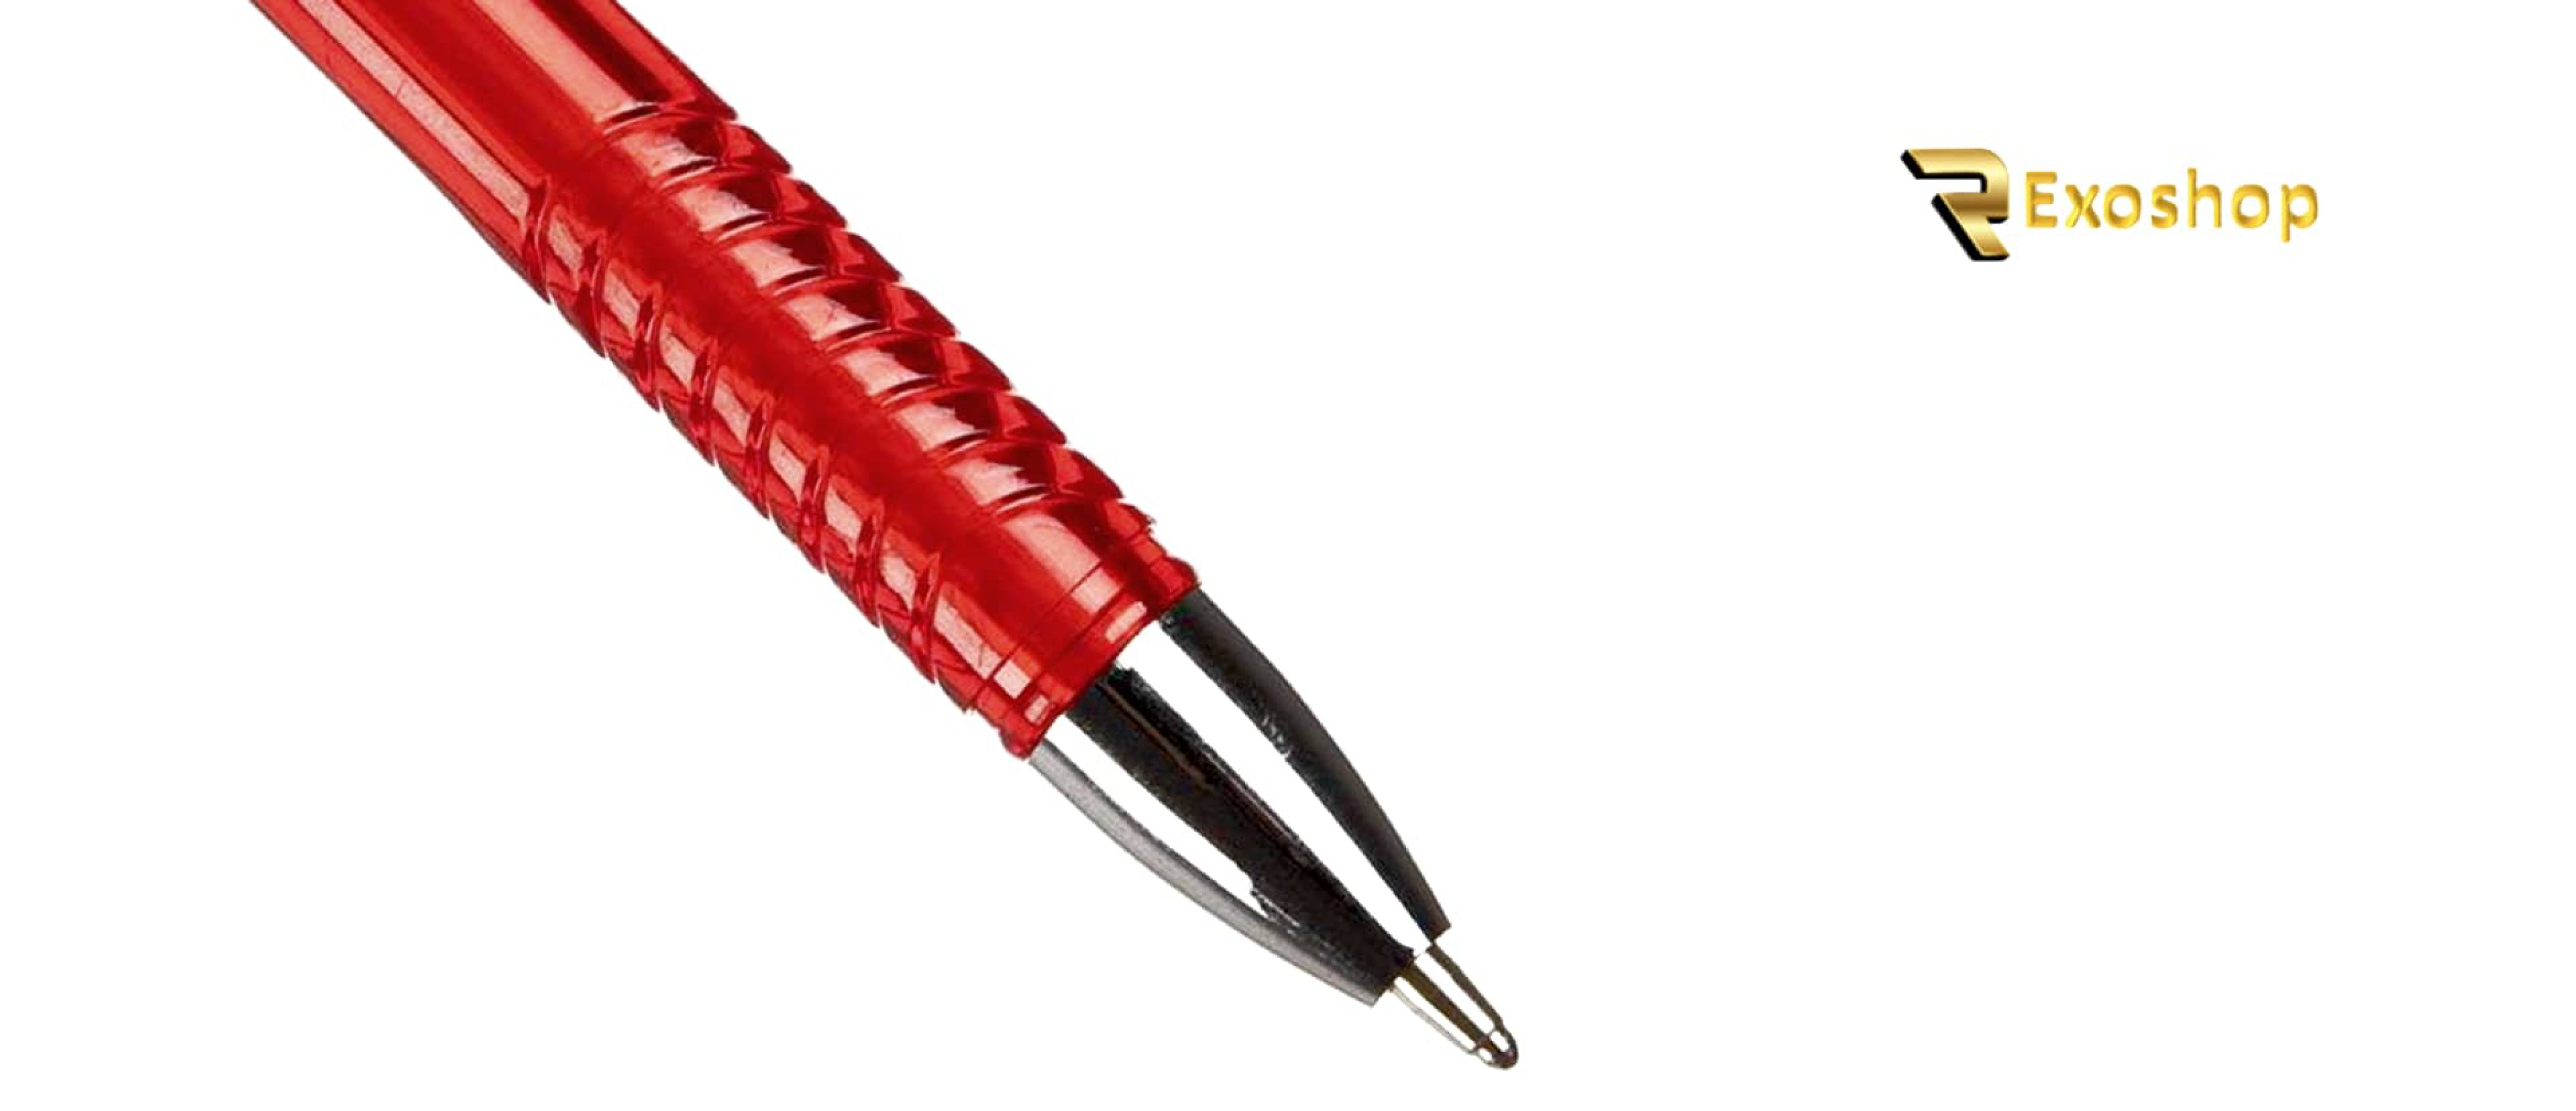  خودکار 10 رنگ لانتو مدل JM2012-10 یکی از بهترین نوع خودکار ها است که با قیمتی ارزان و در رکسوشاپ موجود می باشد 